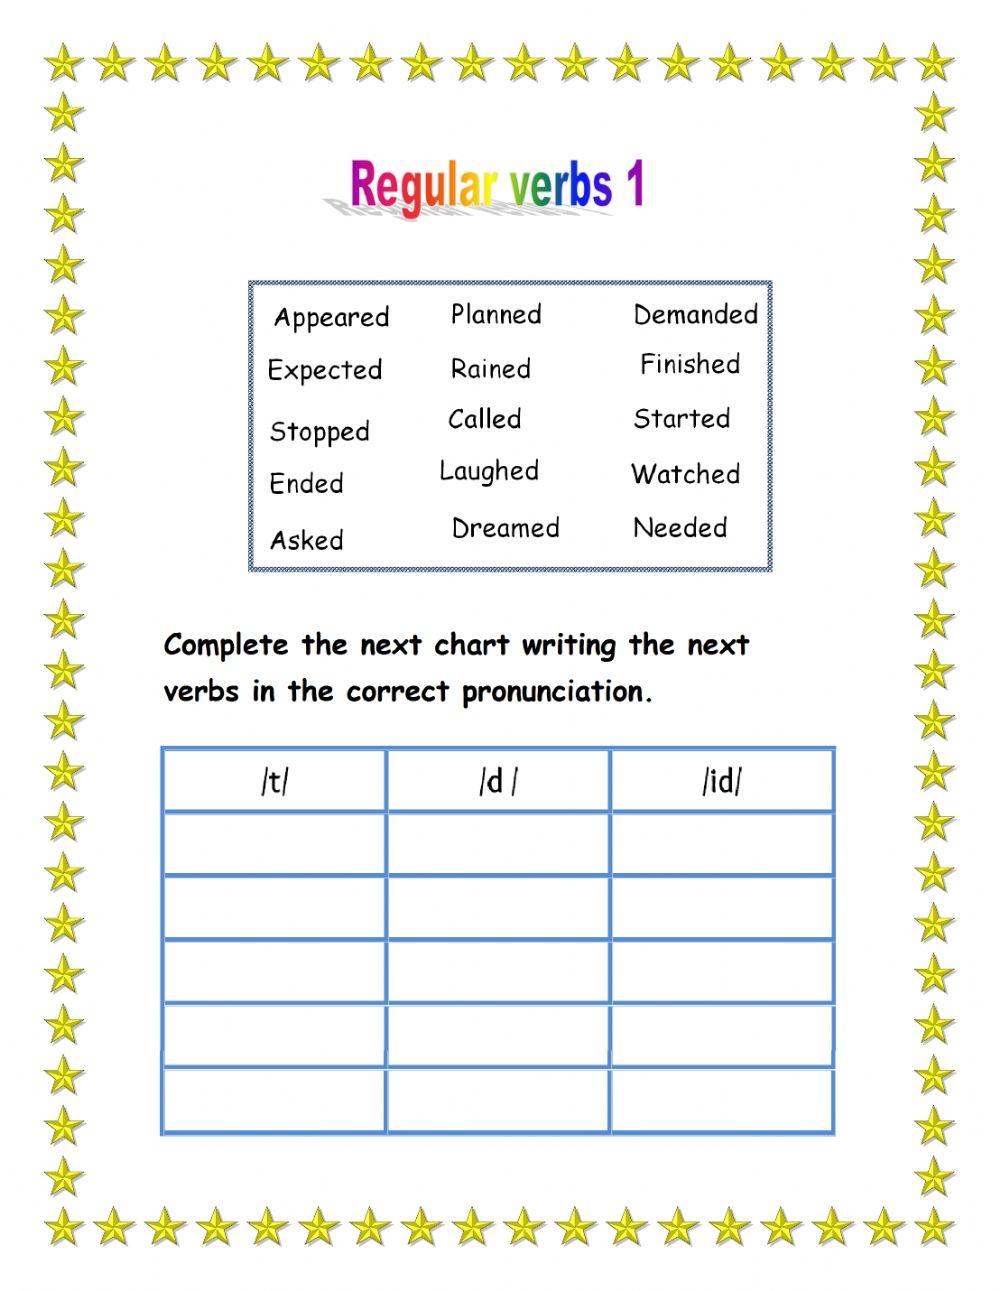 Regular verbs 1